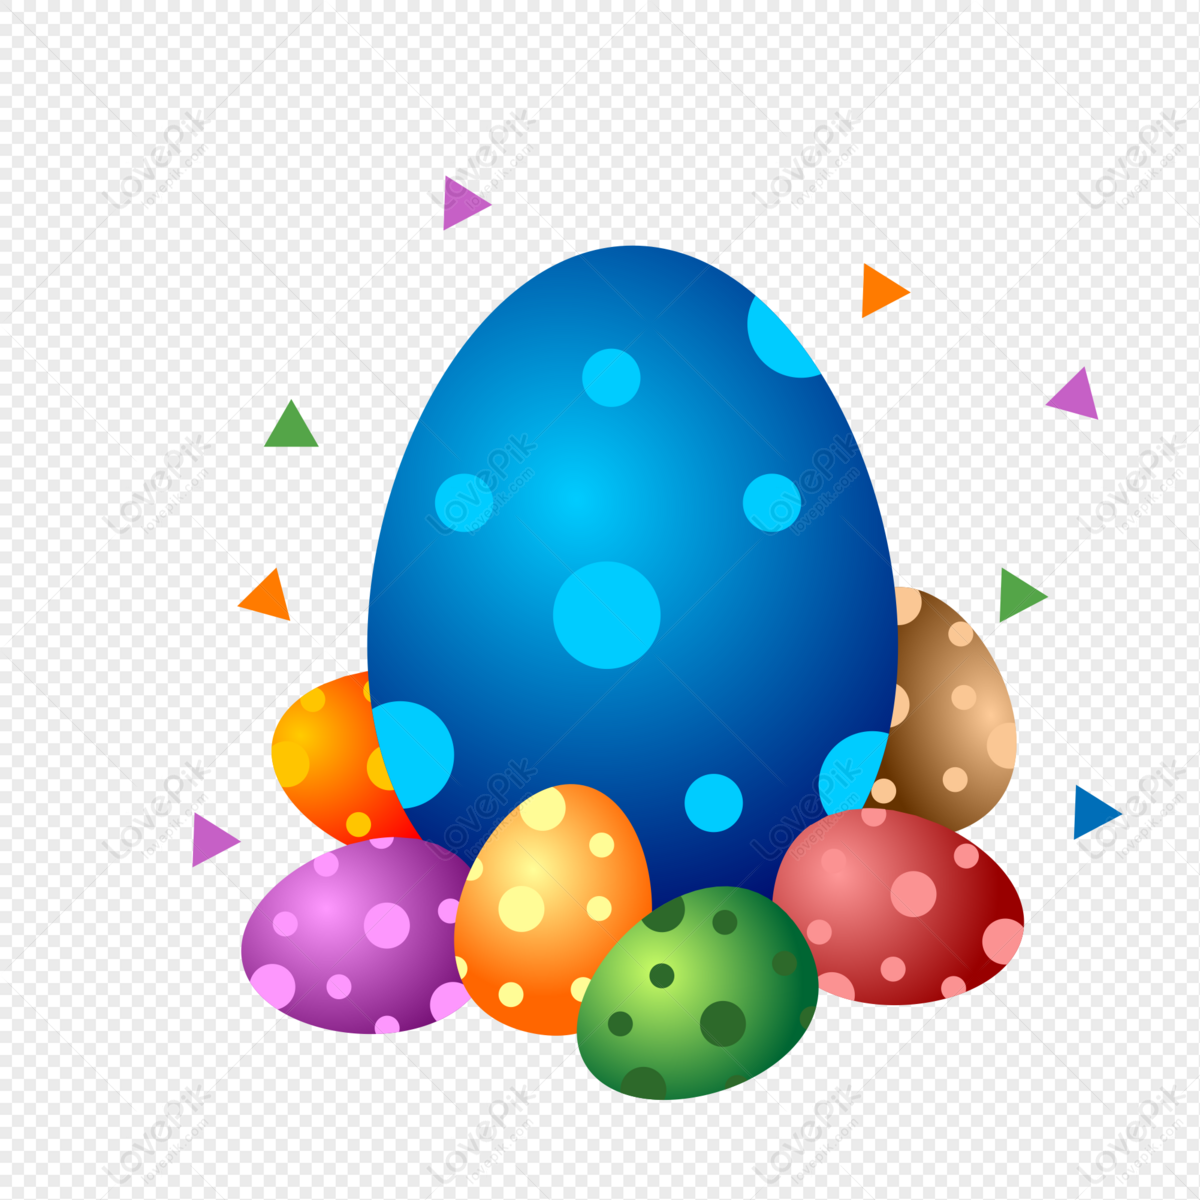 Easter Egg Background png download - 1500*1500 - Free Transparent